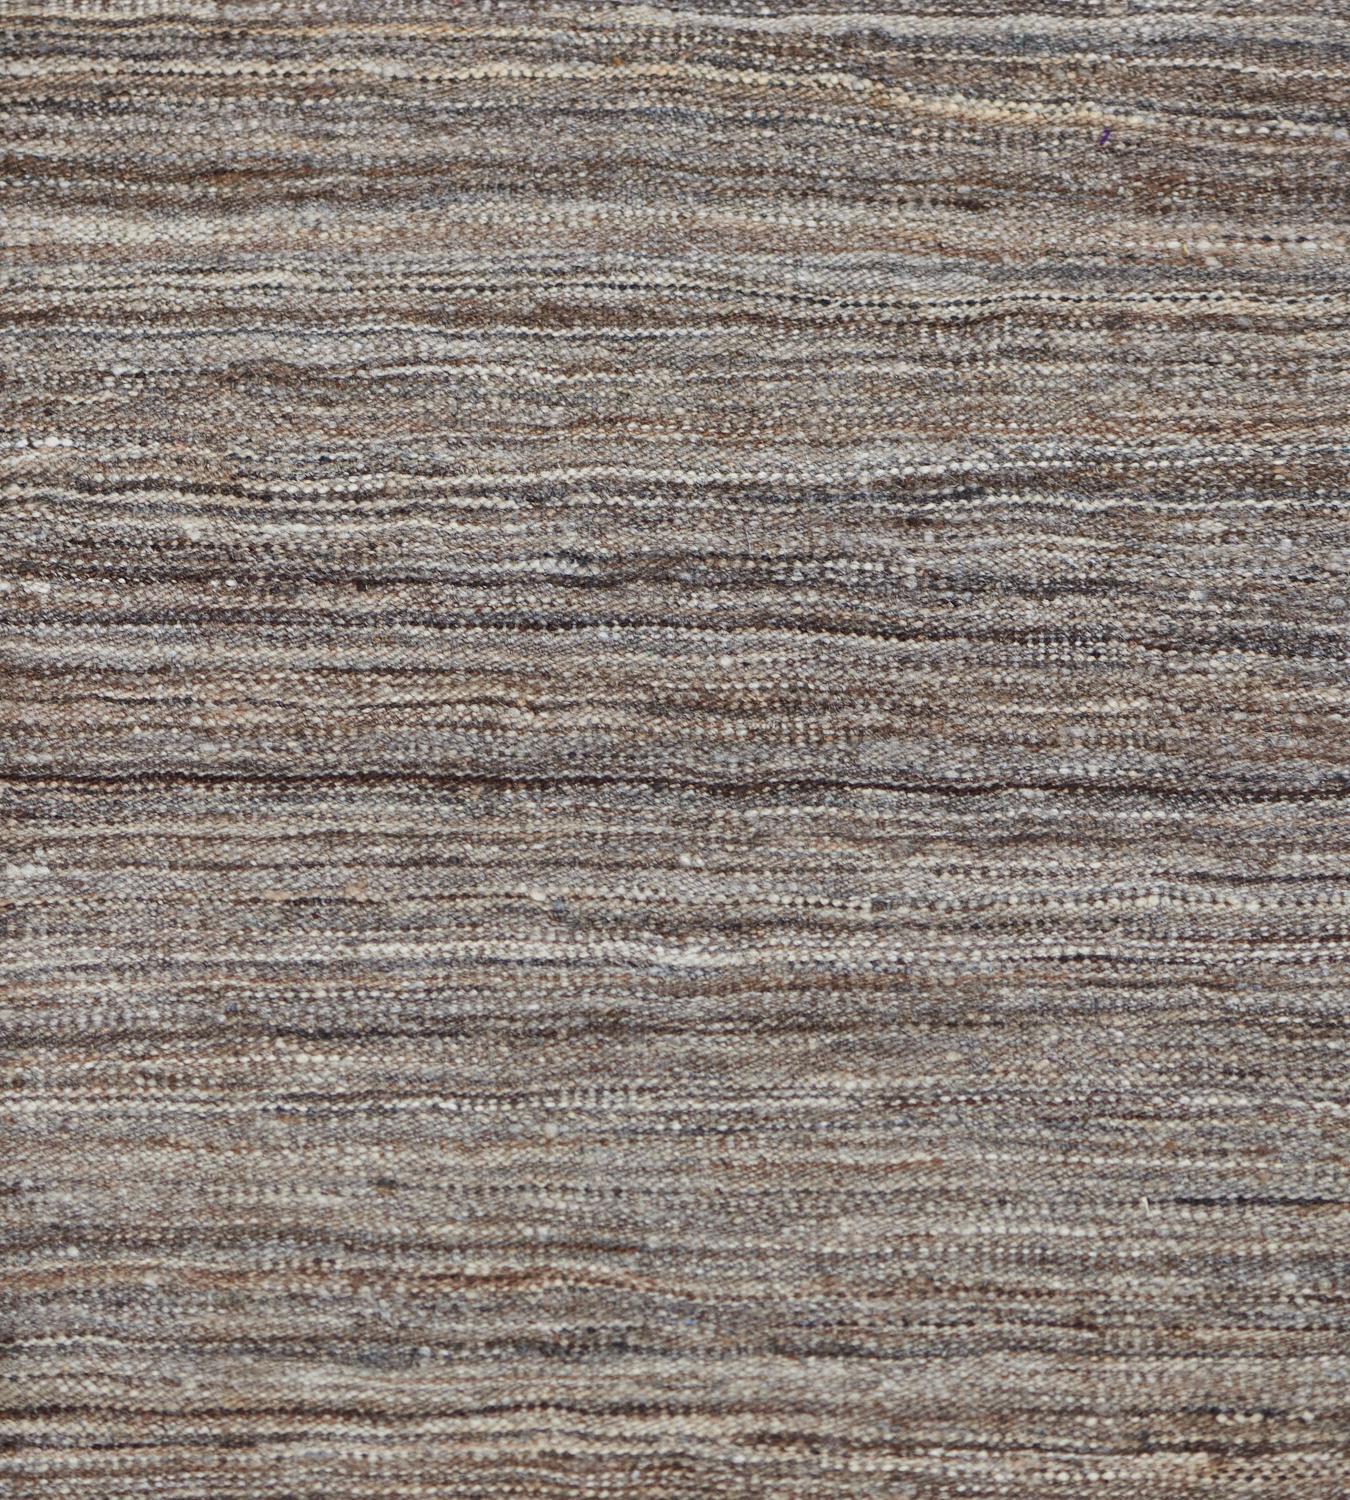 Dieser moderne Teppich im Kilim-Stil hat ein zentrales Feld mit horizontalen, schmalen Streifen in Fuchsbraun, Stahlgrau und Sandbraun.